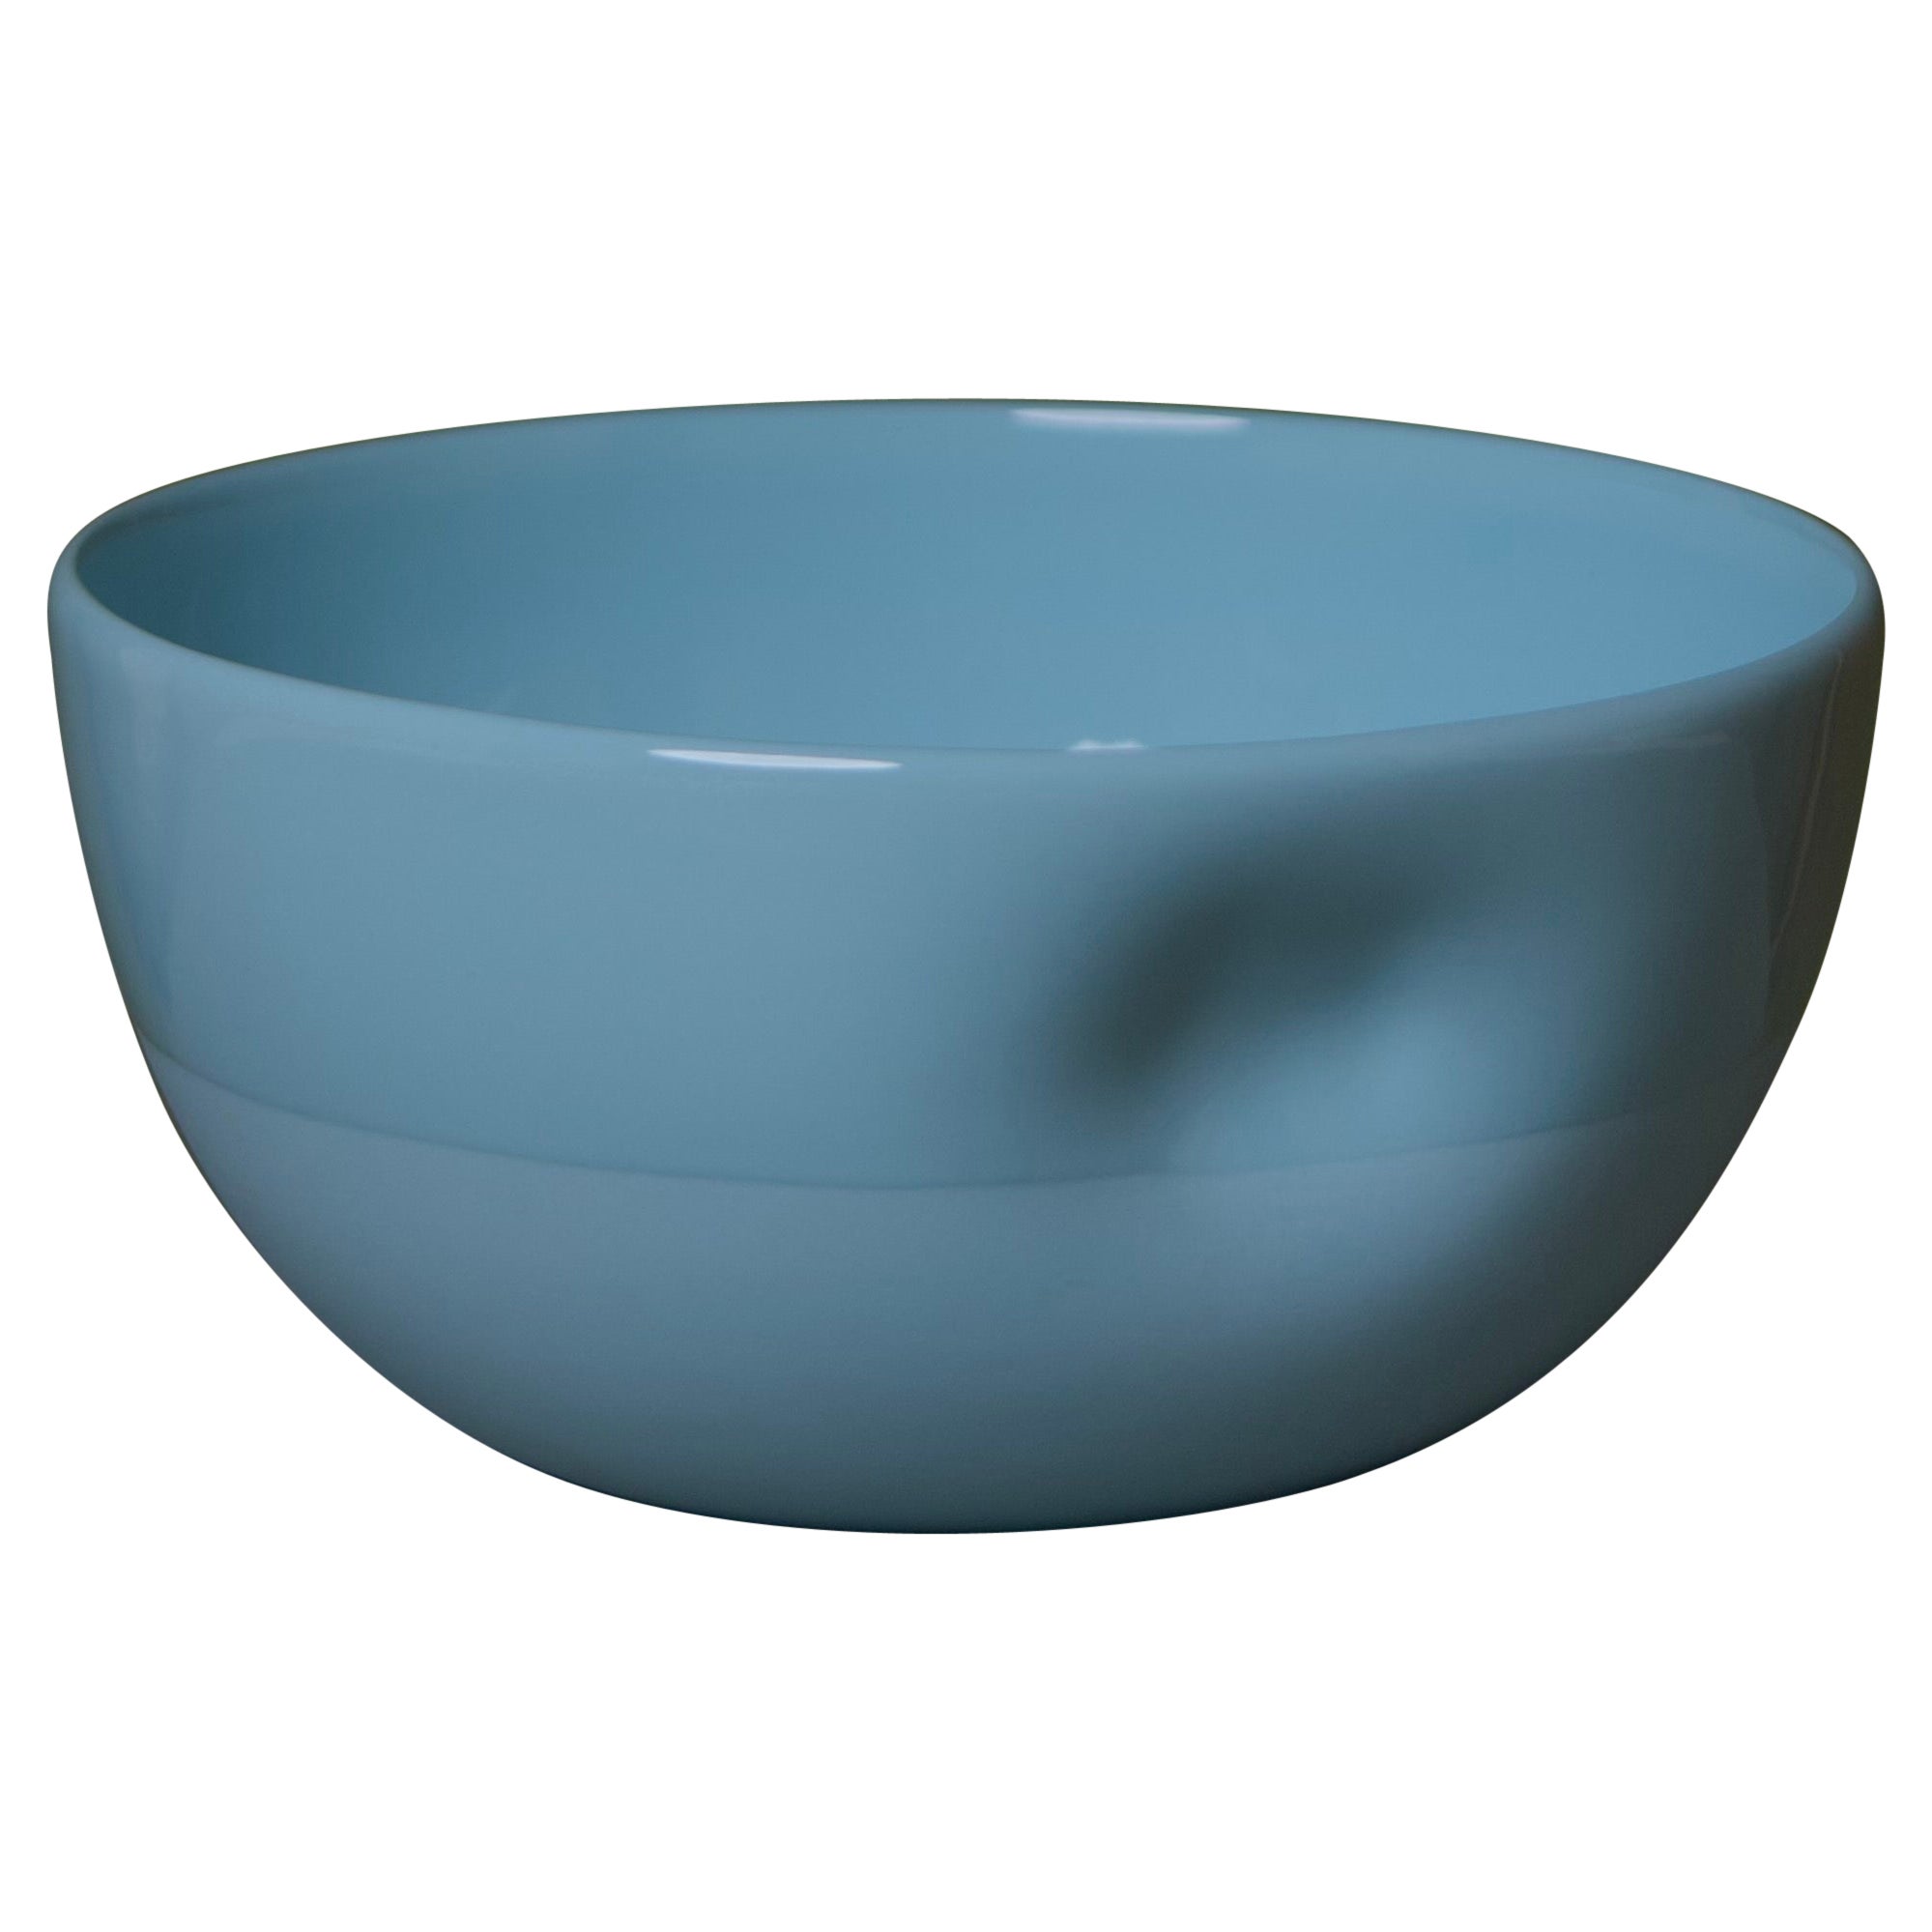 Large Dimpled Porcelain Bowl in Denim Blue